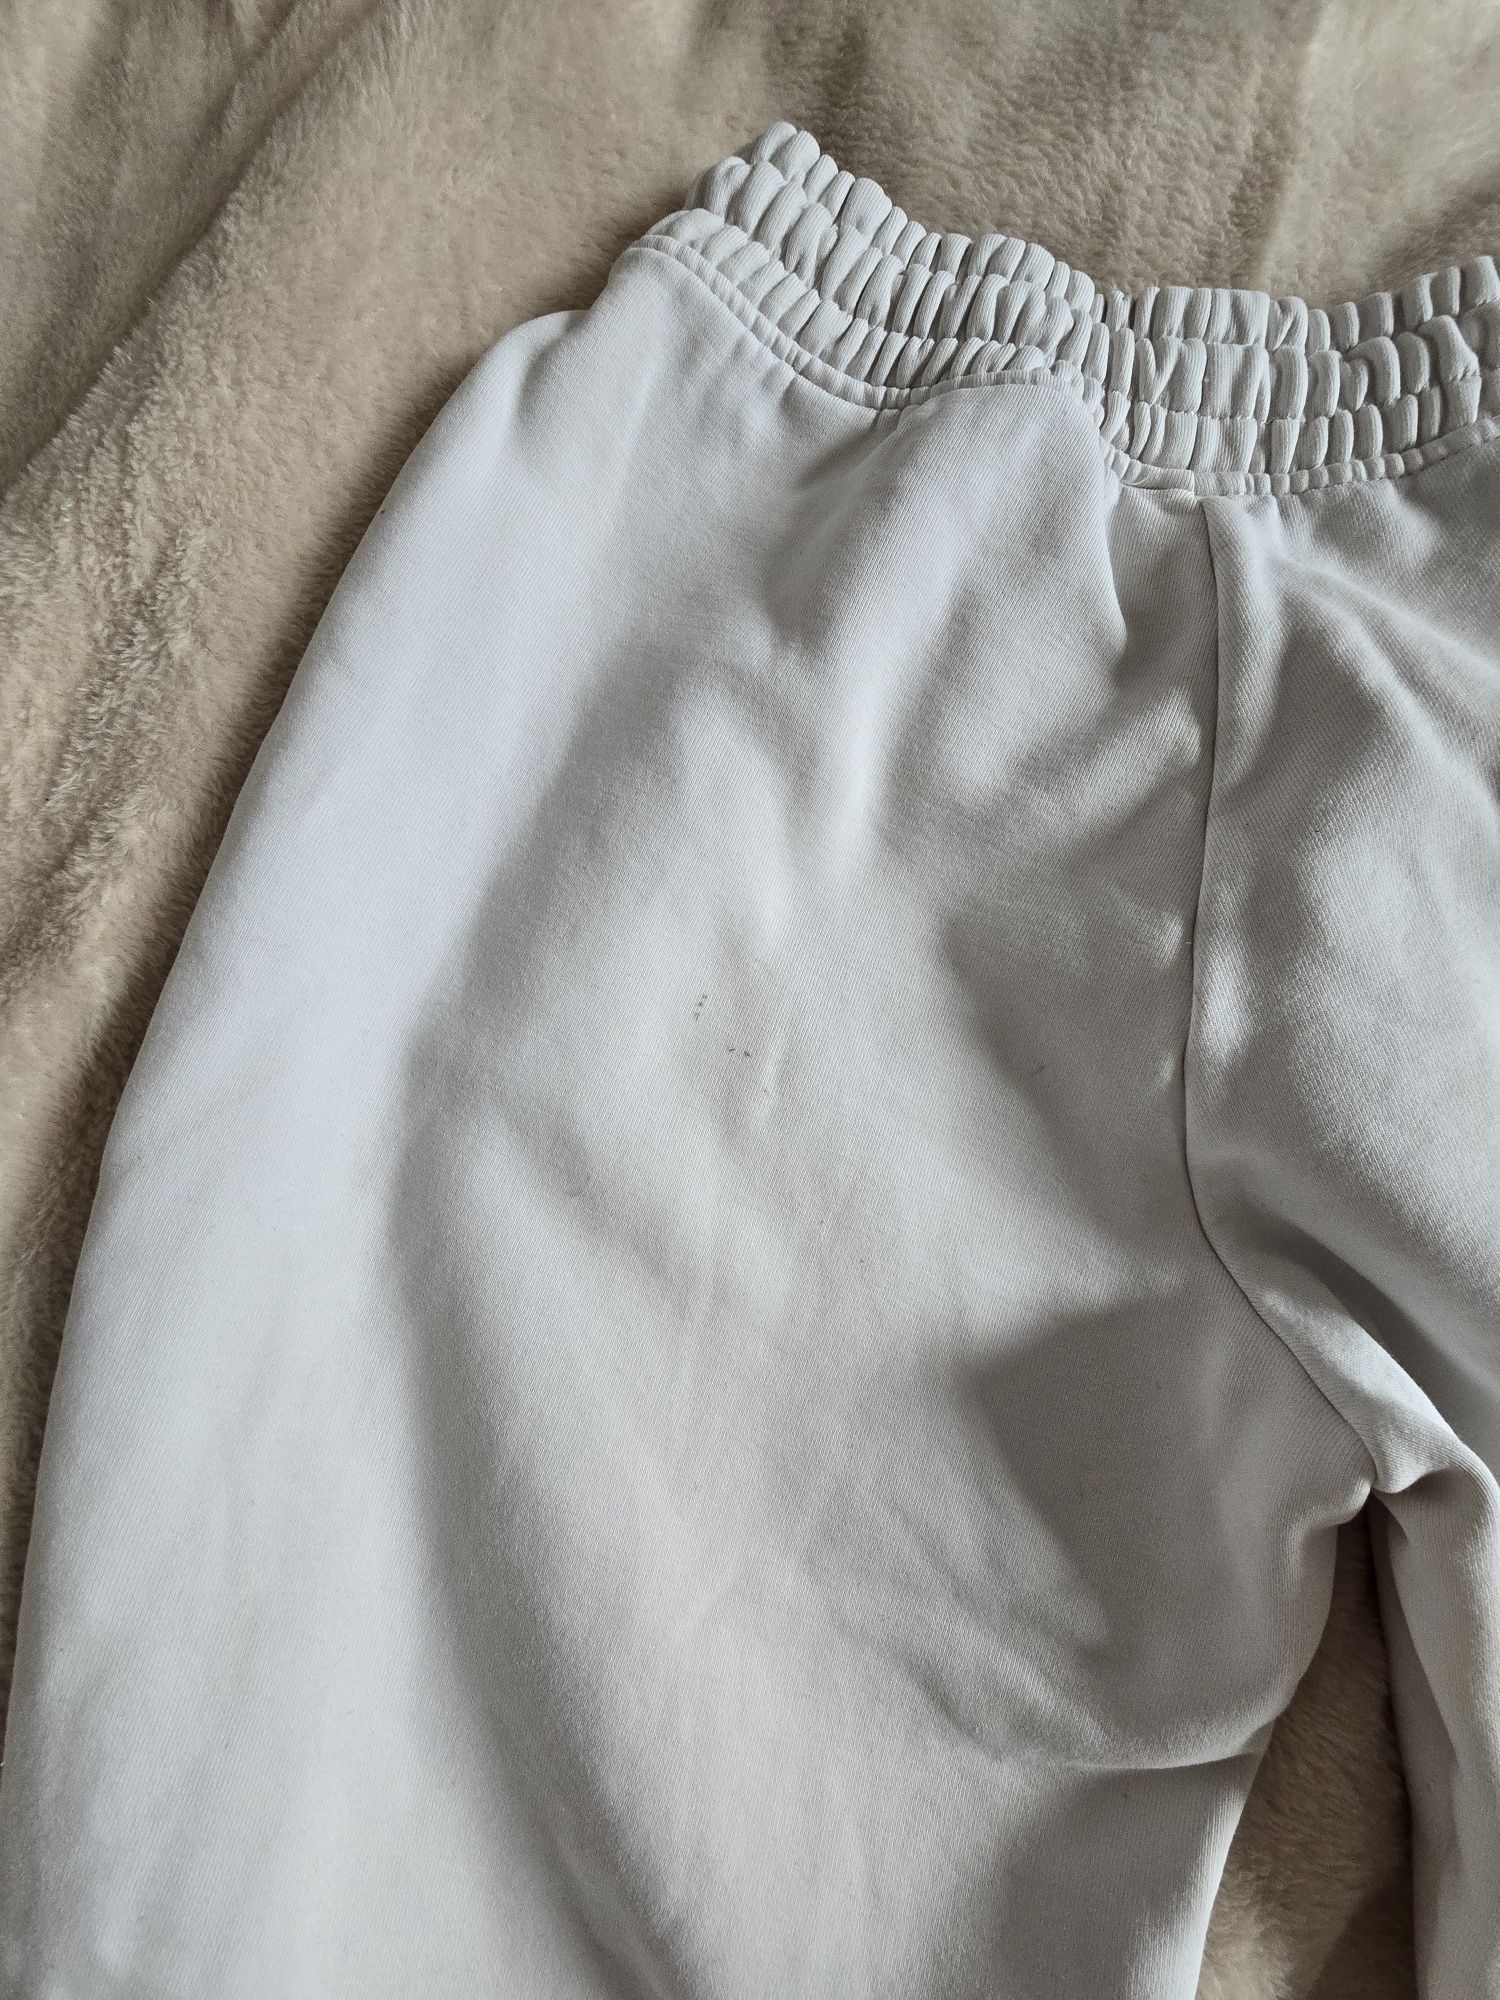 Spodnie białe dresowe 4f rozm XS joggery